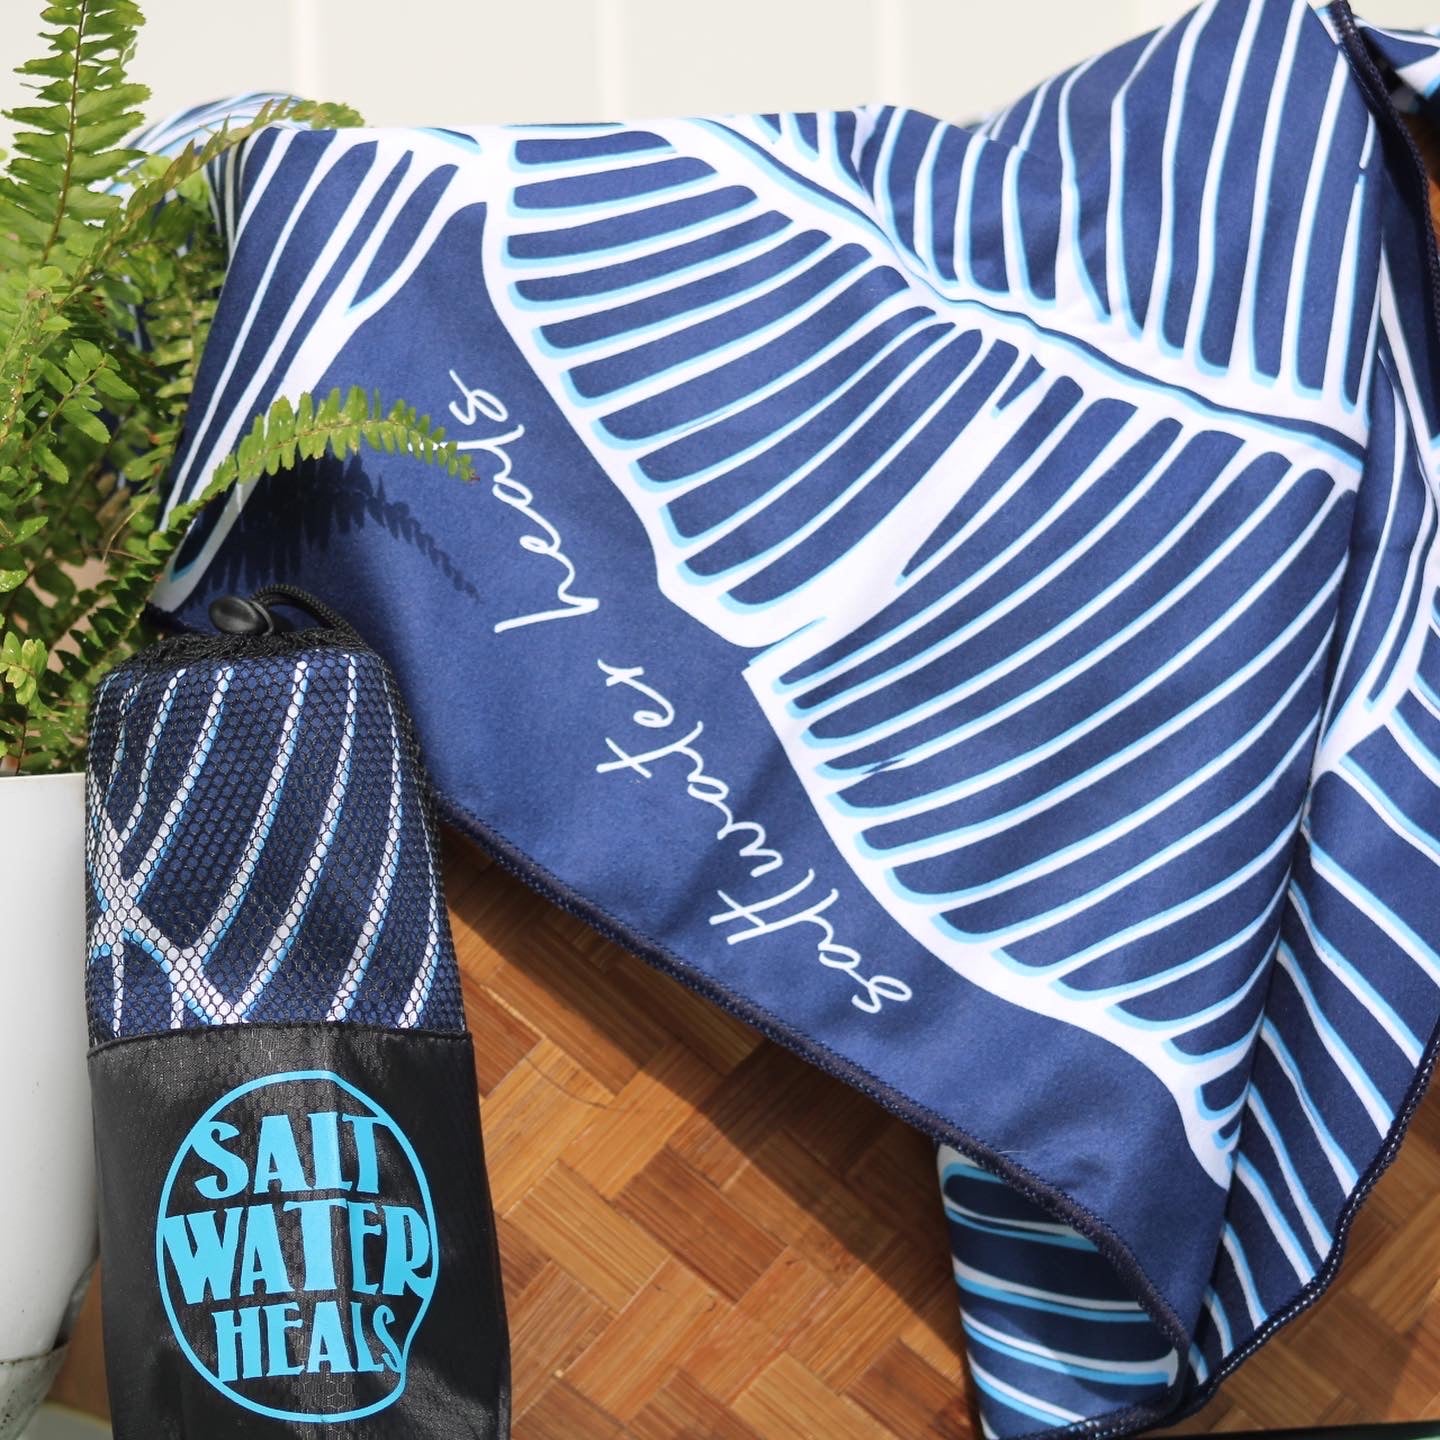 Salt Water Heals Microfiber Towel